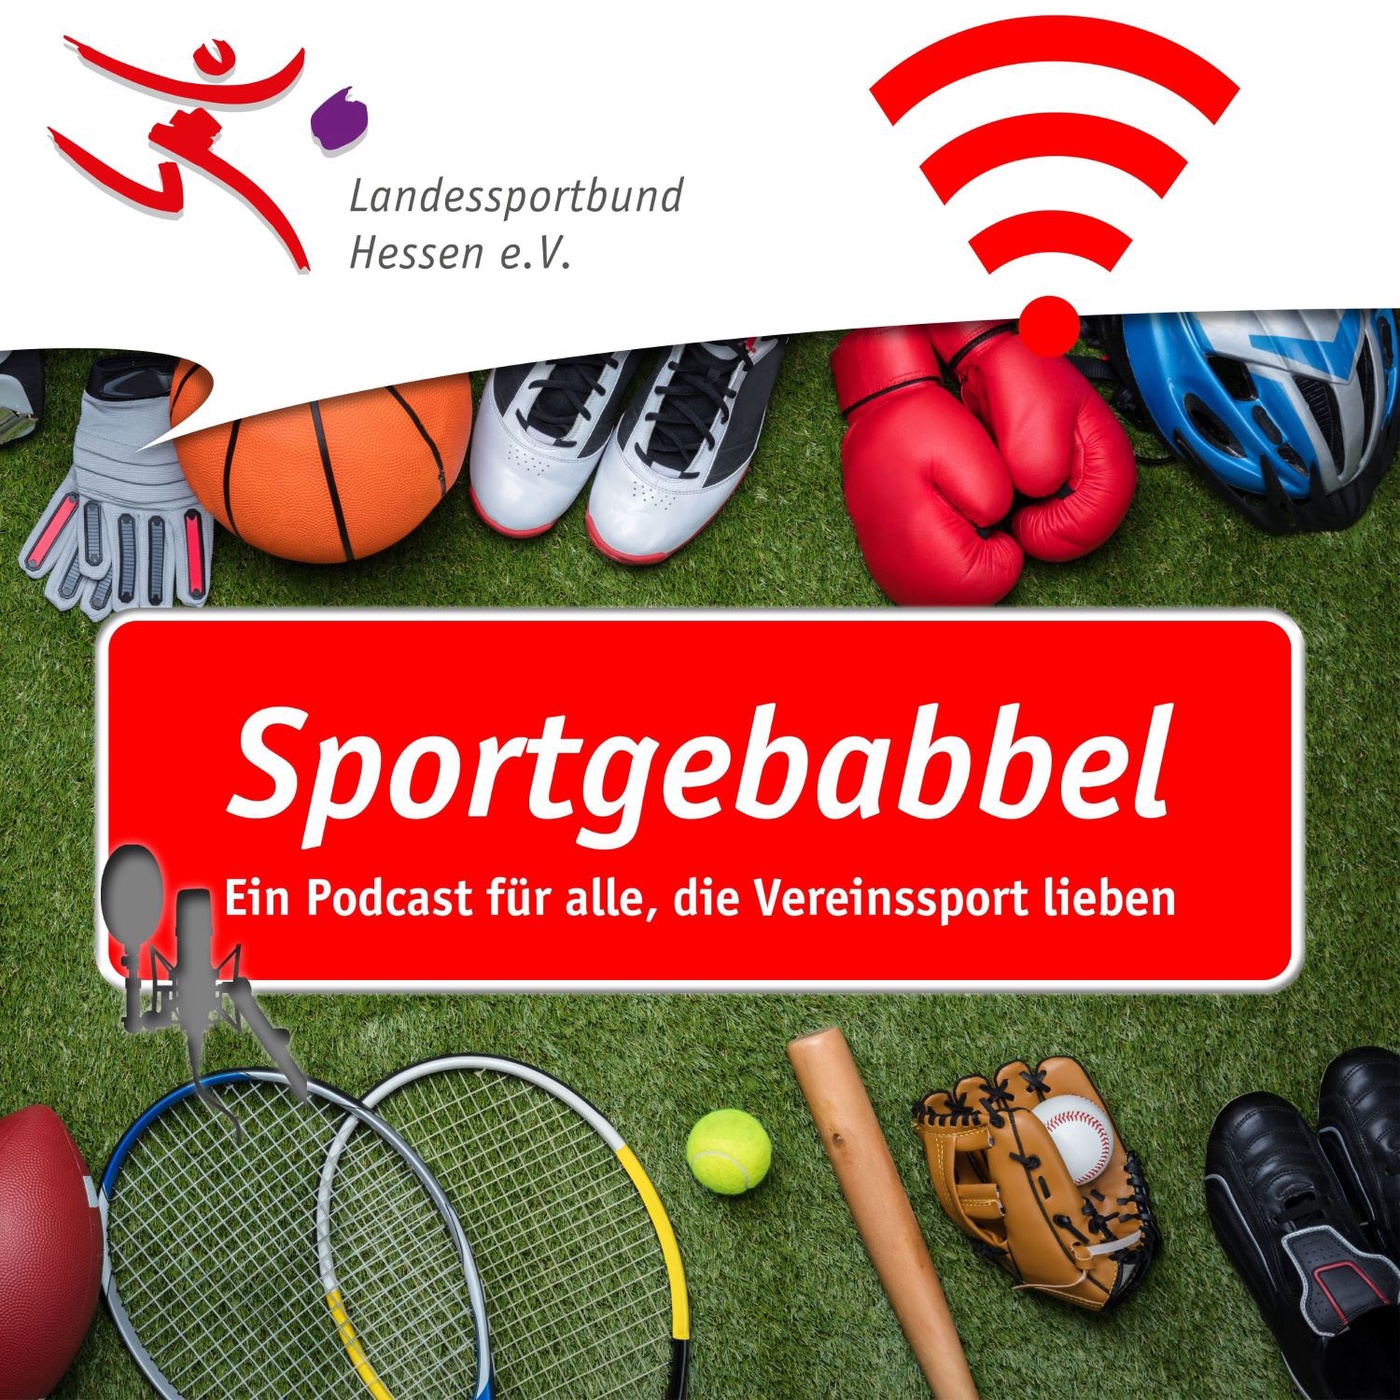 Sportgebabbel – Ein Podcast für alle, die Vereinssport lieben